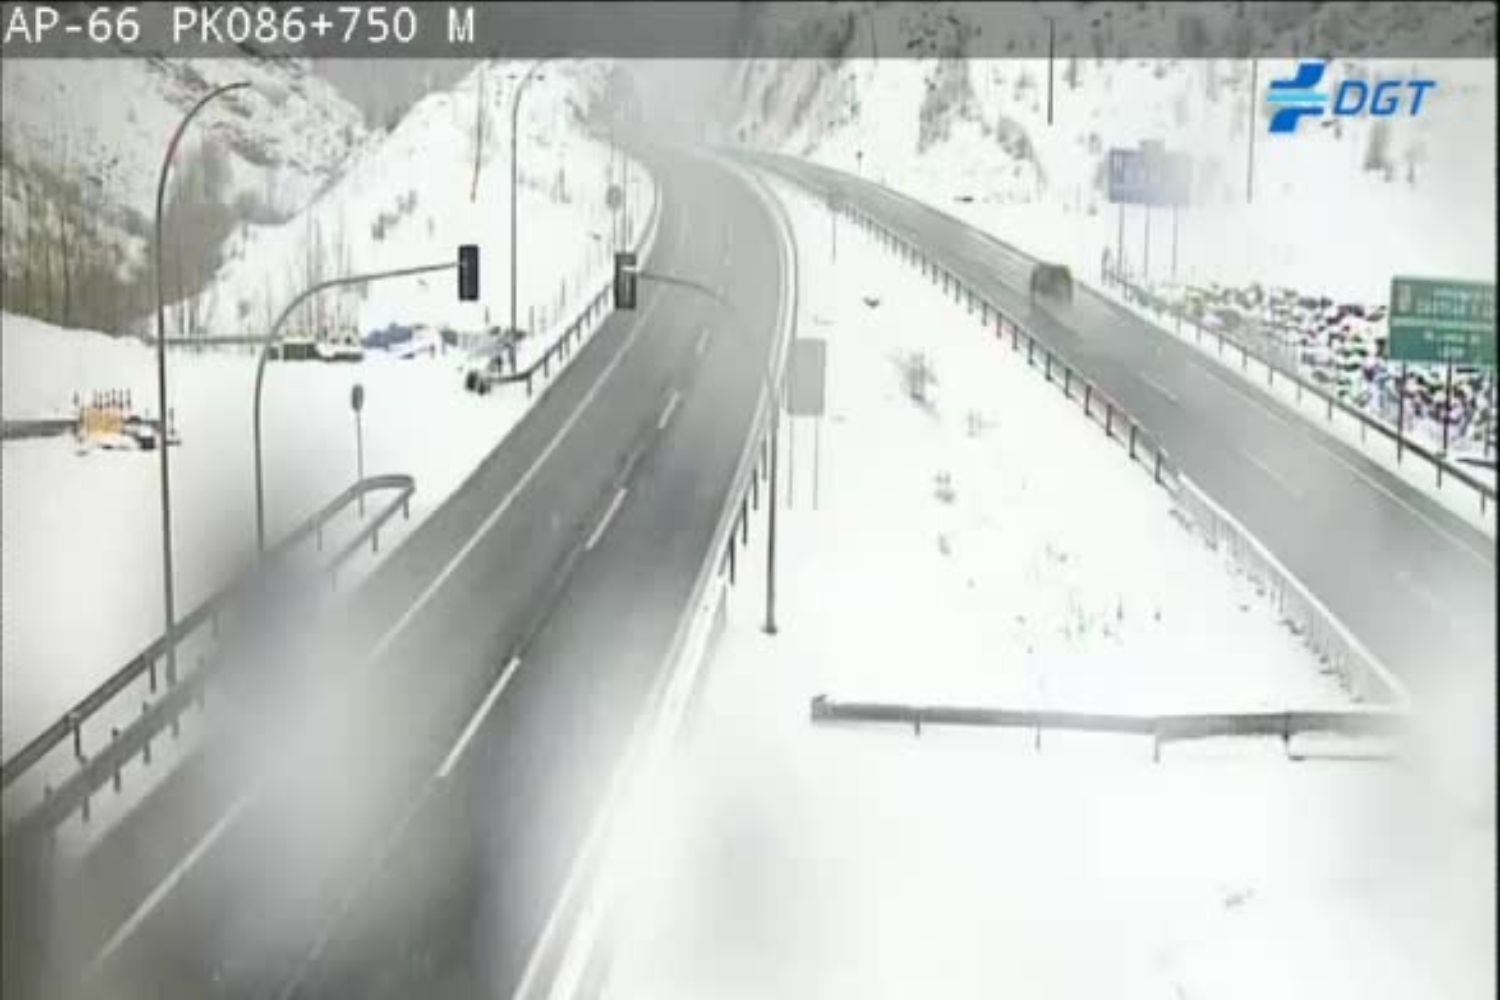 La nieve continúa afectando a las carreteras de León, prohibiendo la circulación de camiones en la AP-66, entre Caldas y Mora de Luna